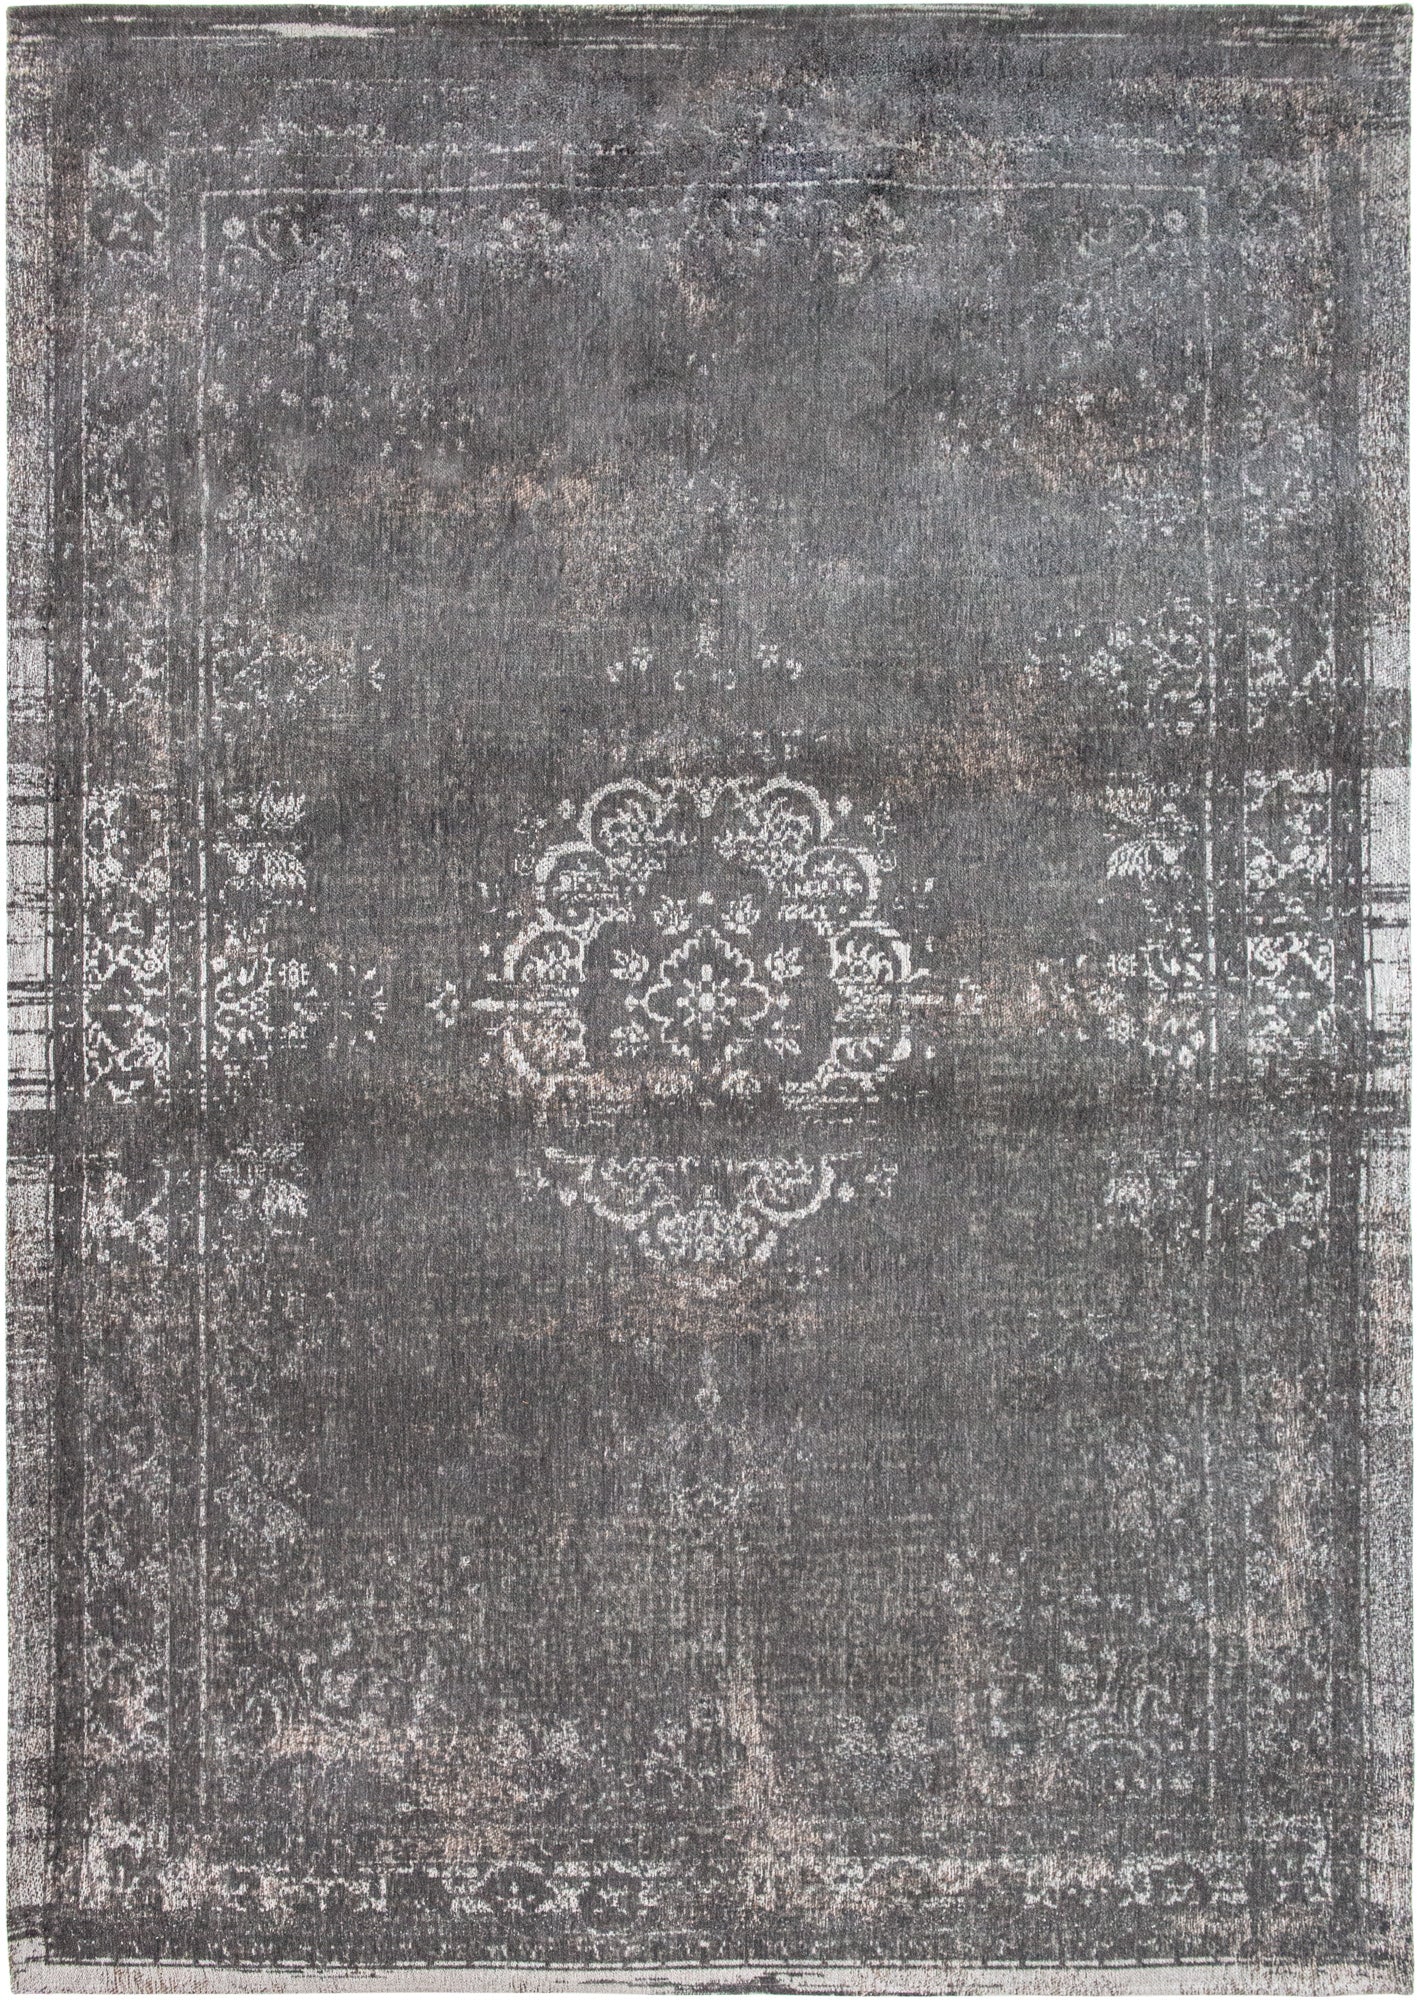 ME-230: Jacquard carpet